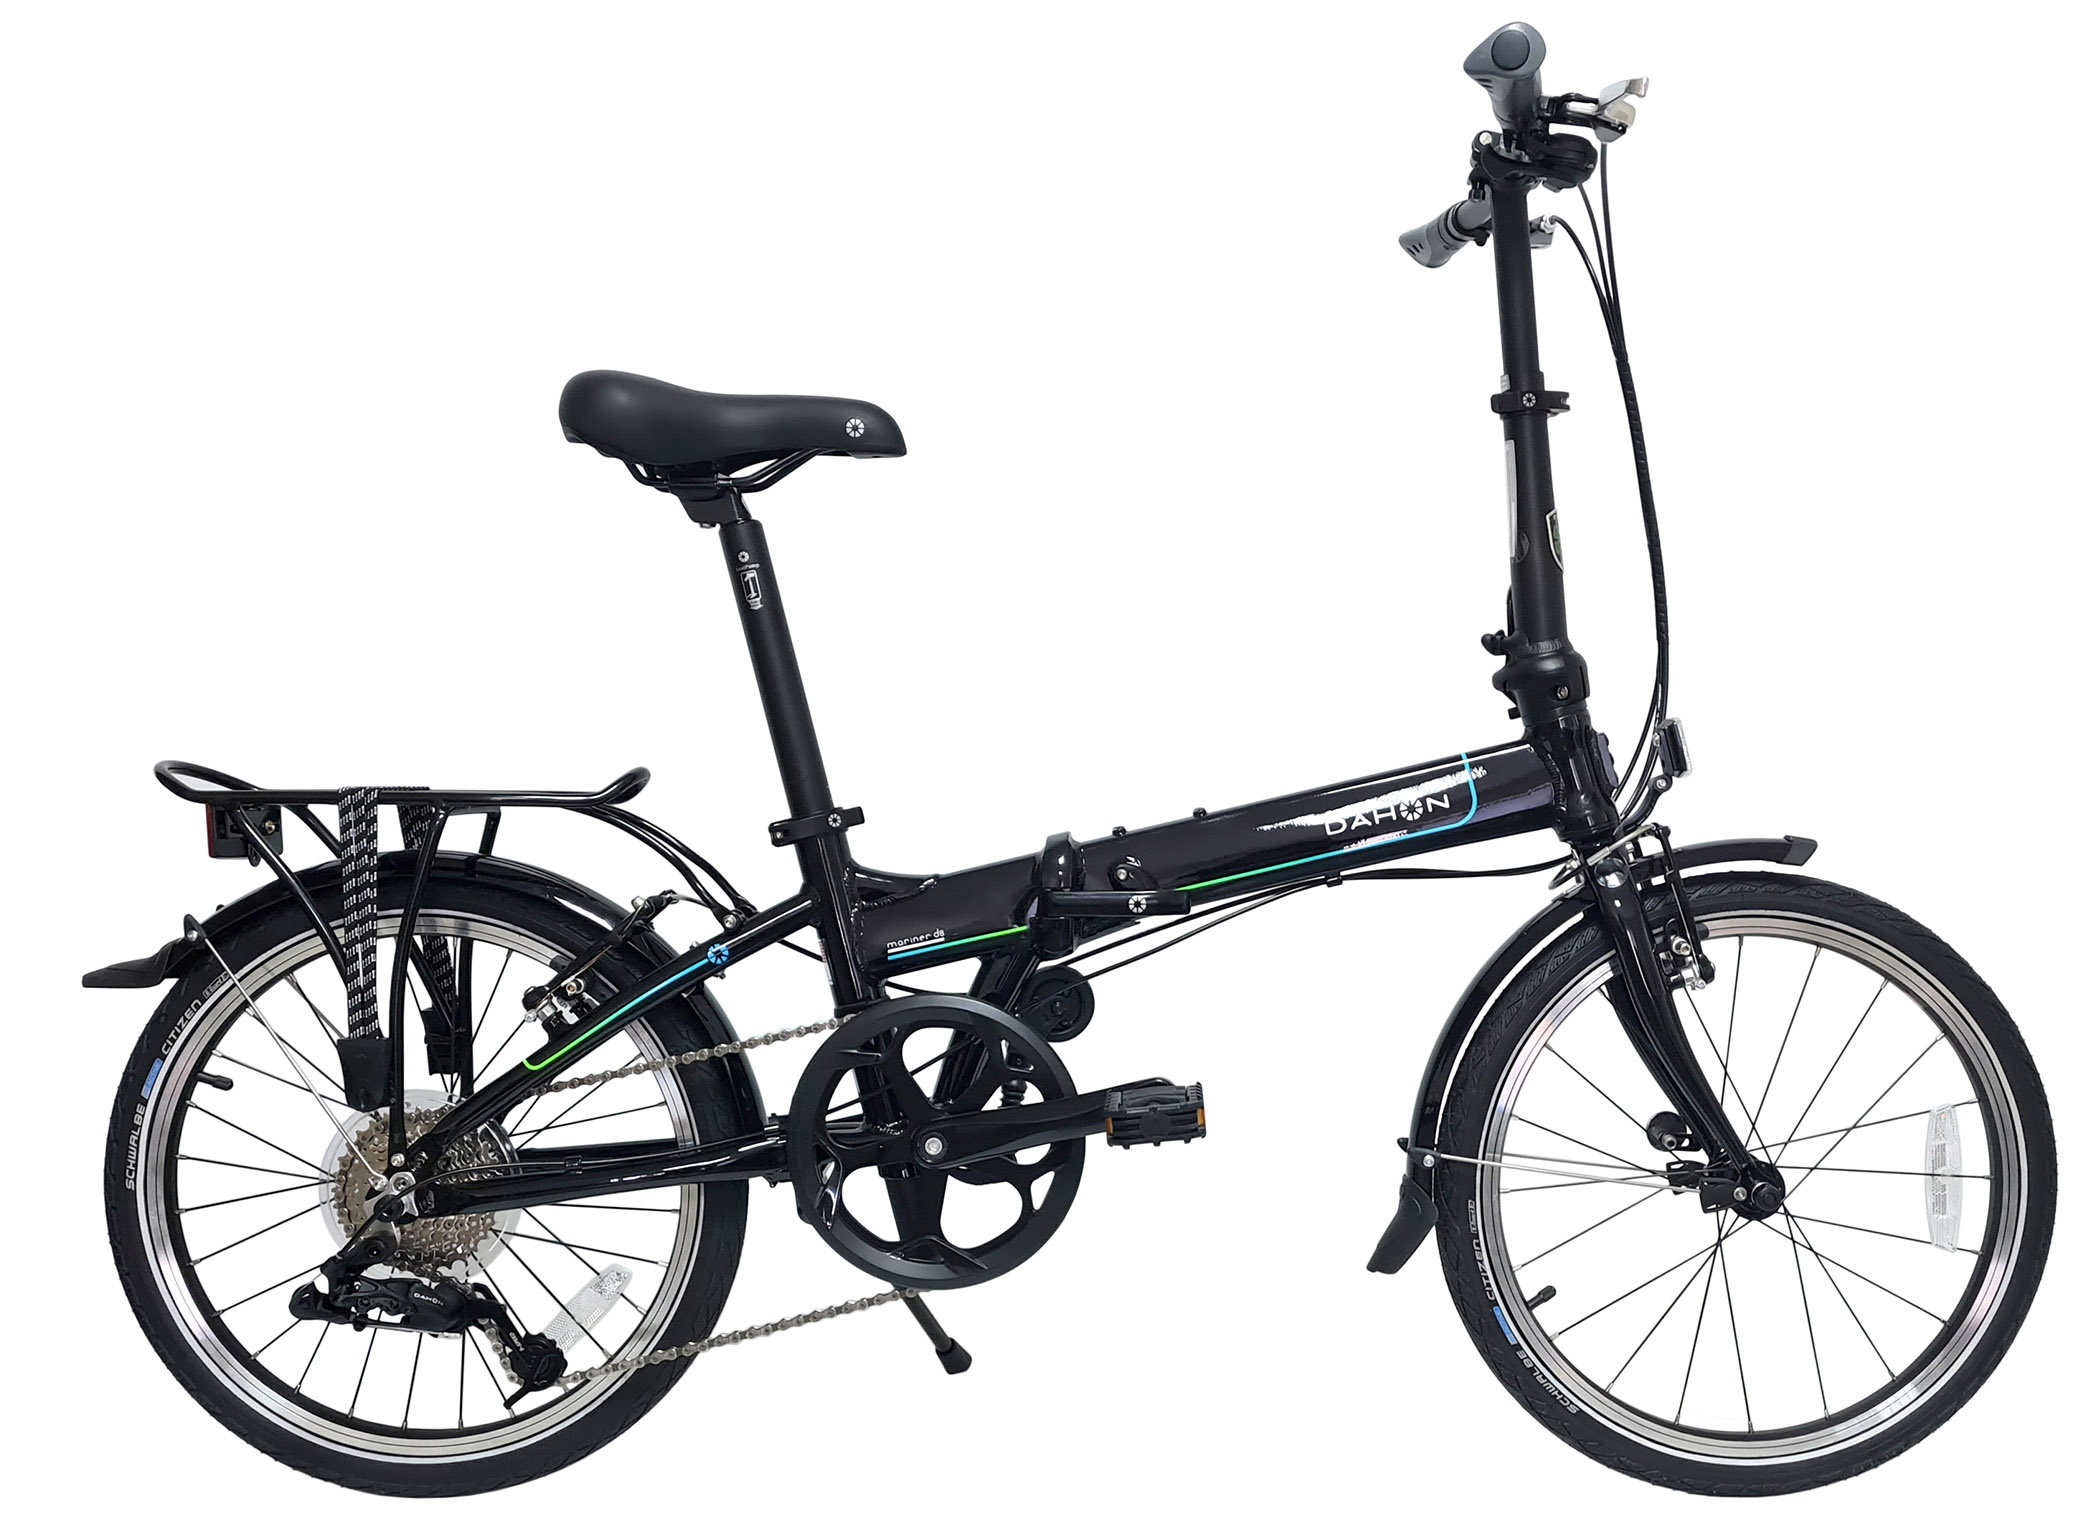  Велосипед Dahon Mariner D8 (2021) 2021